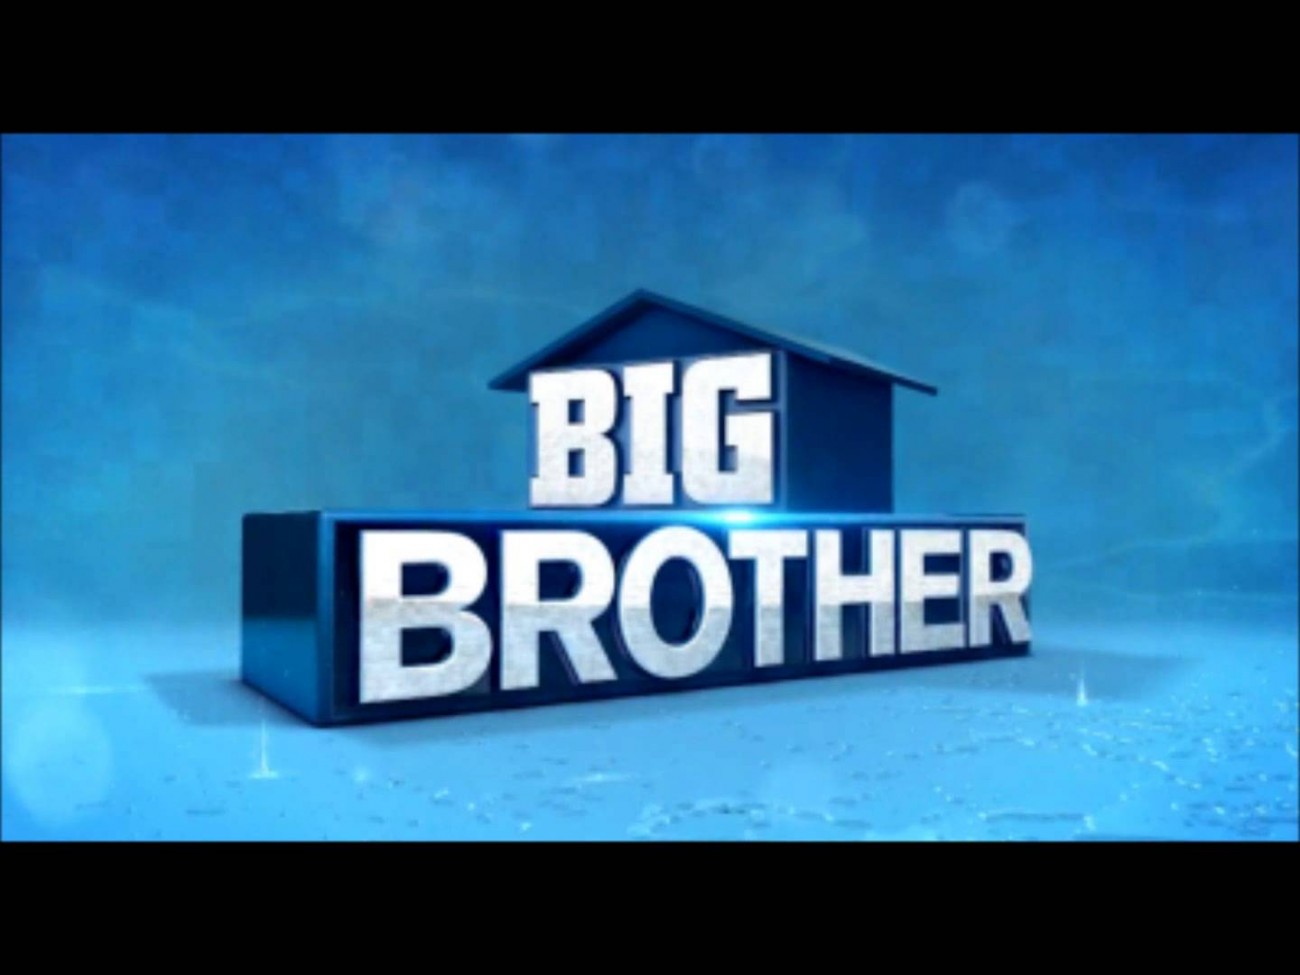 Big Brother: Δείτε ποιος γνωστός παίχτης του τραβάει αυτοκίνητα με τα μαλλιά του (βίντεο)